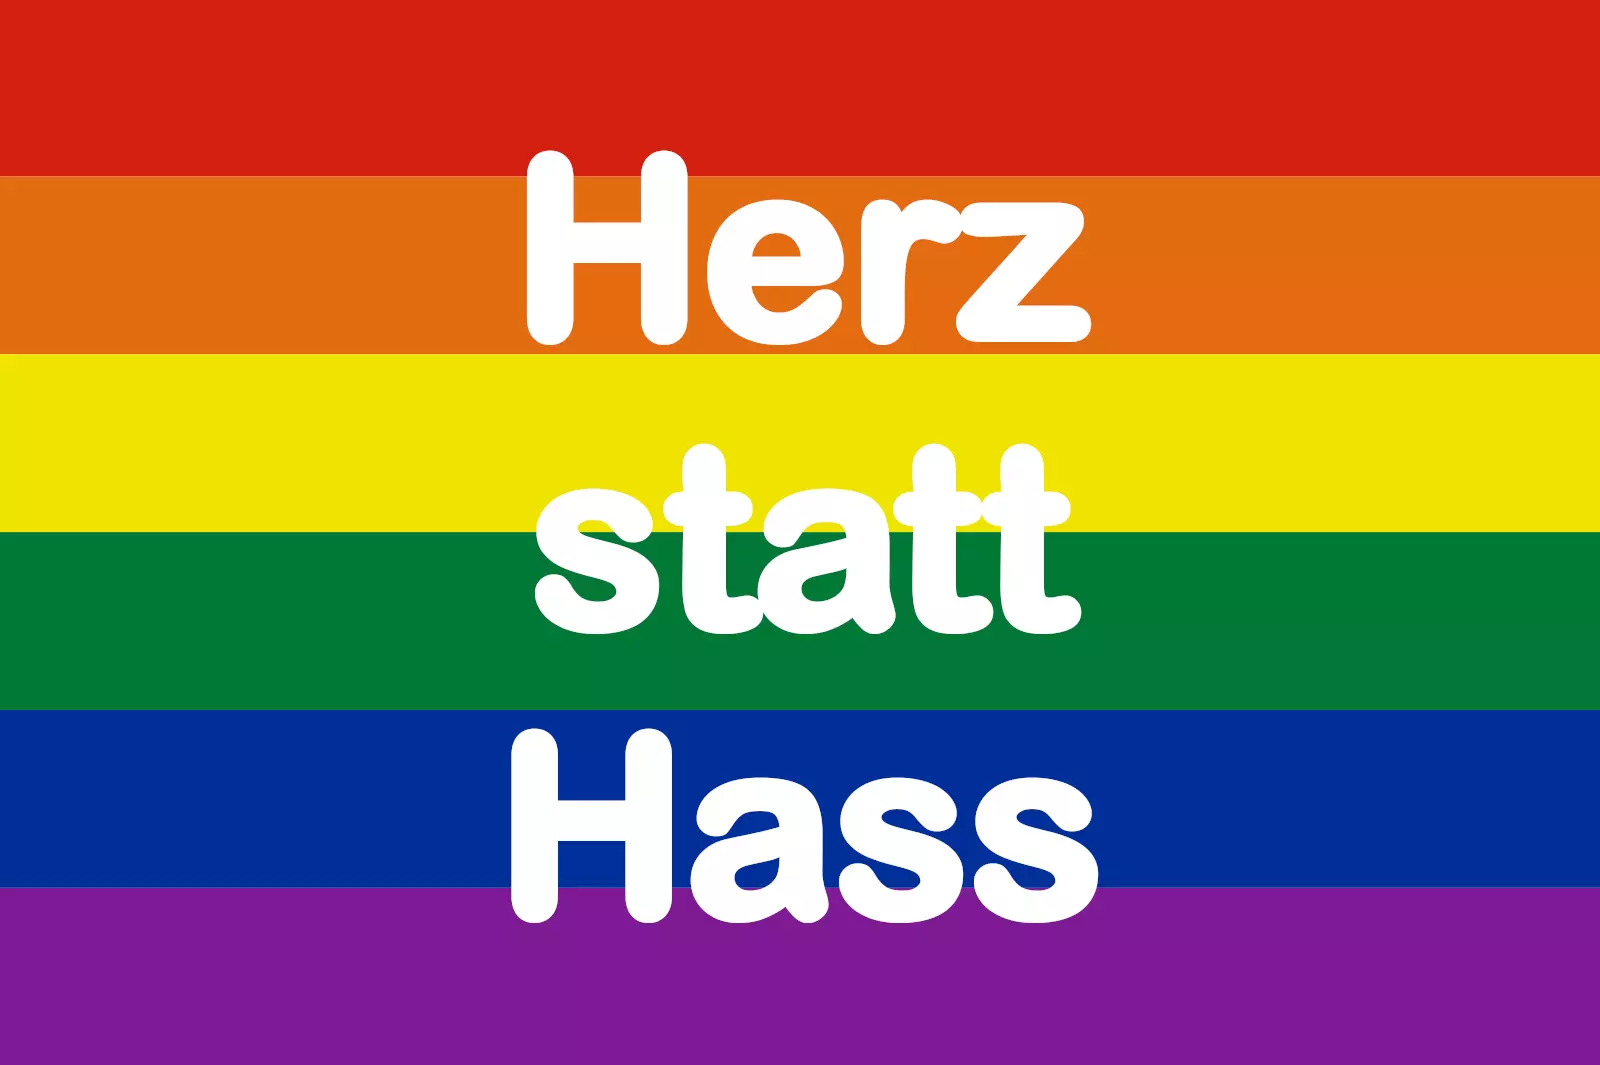 Bunte Regenbogenflagge mit dem Text 'Herz statt Hass' in weißer Schrift, symbolisiert Liebe, Vielfalt und friedliche Koexistenz.